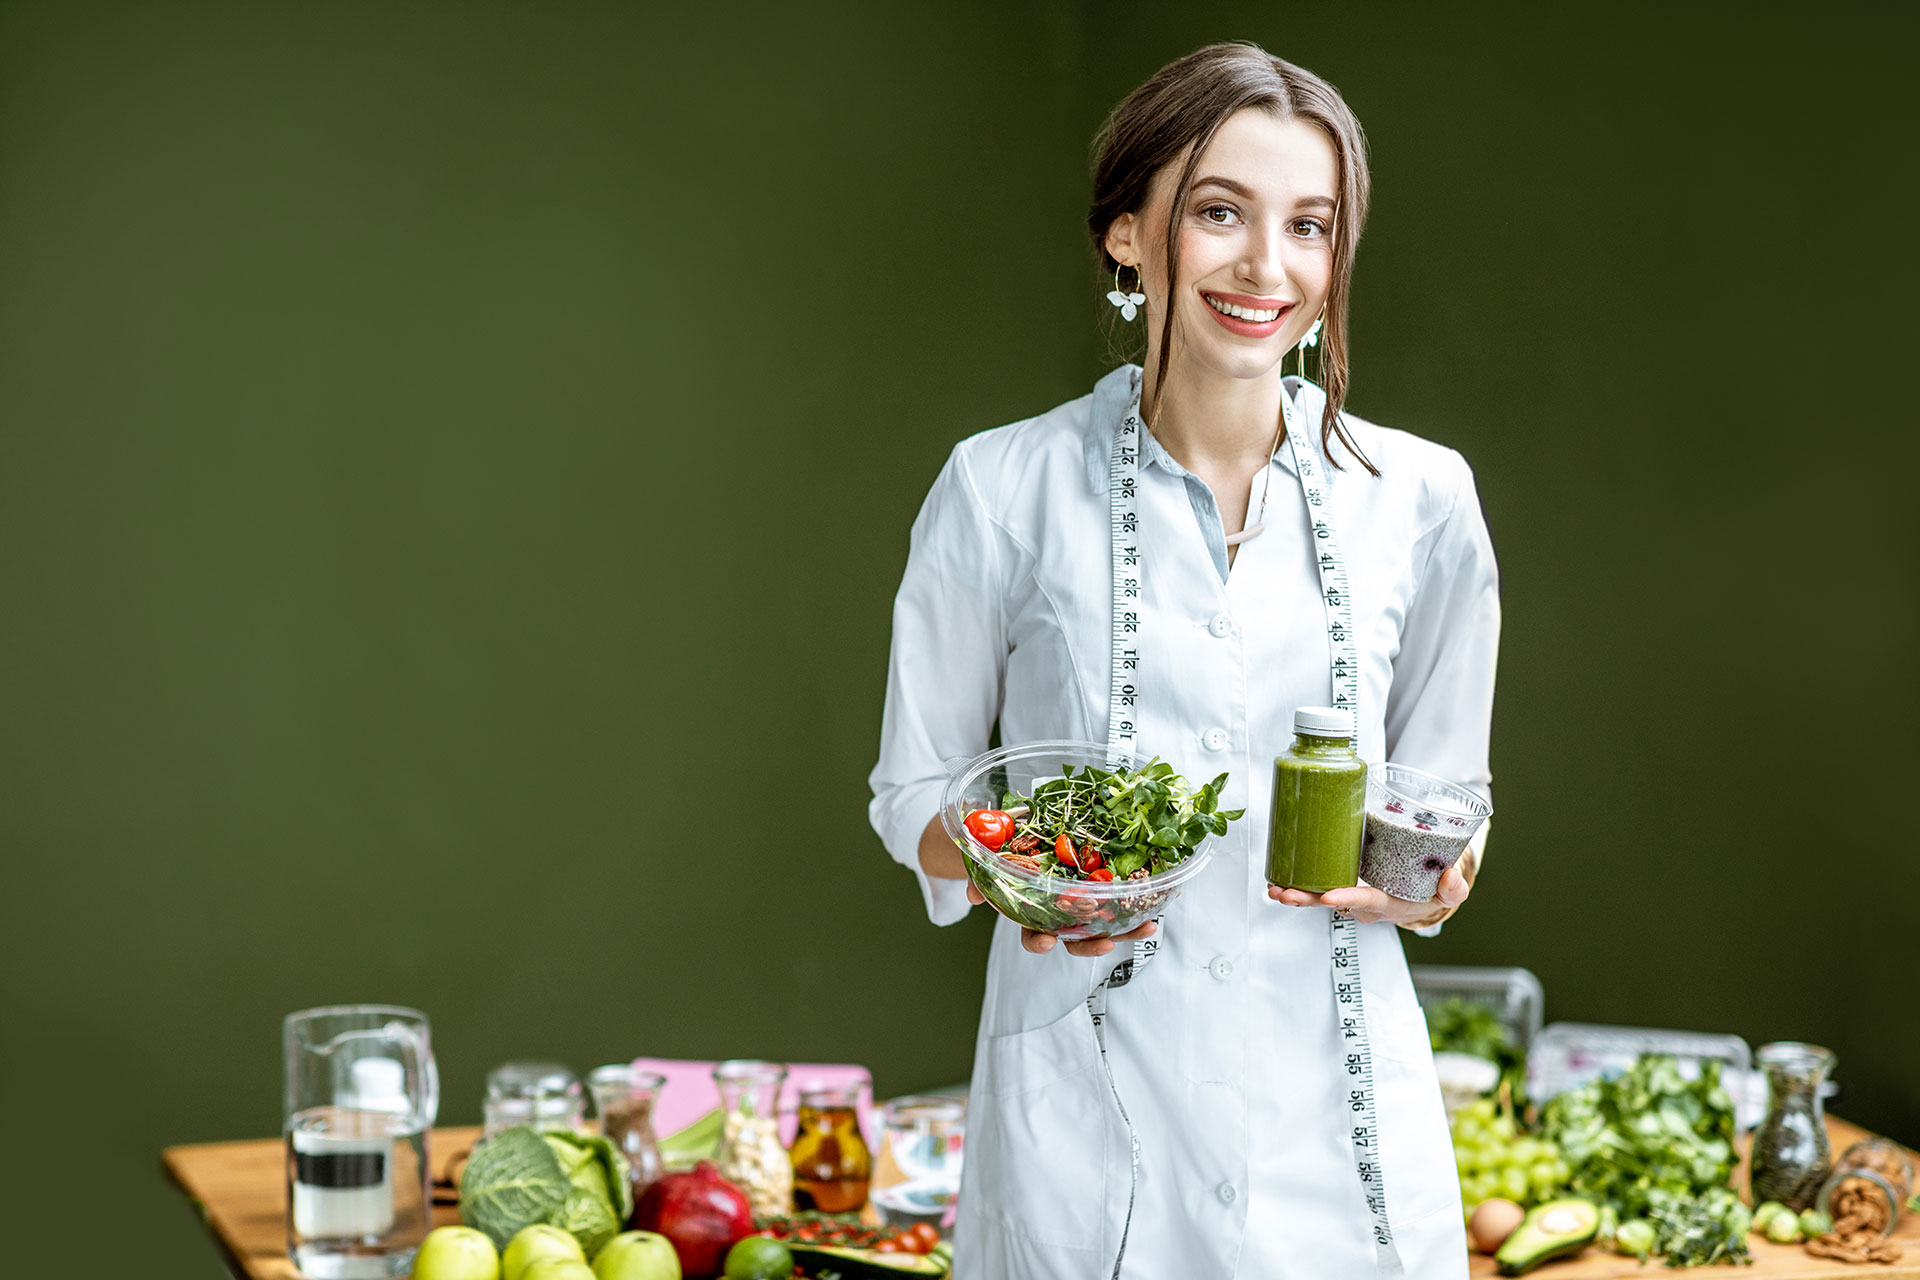 portrait of a woman nutritionist with healthy food 2021 11 02 20 15 35 EJ5U6CJ a